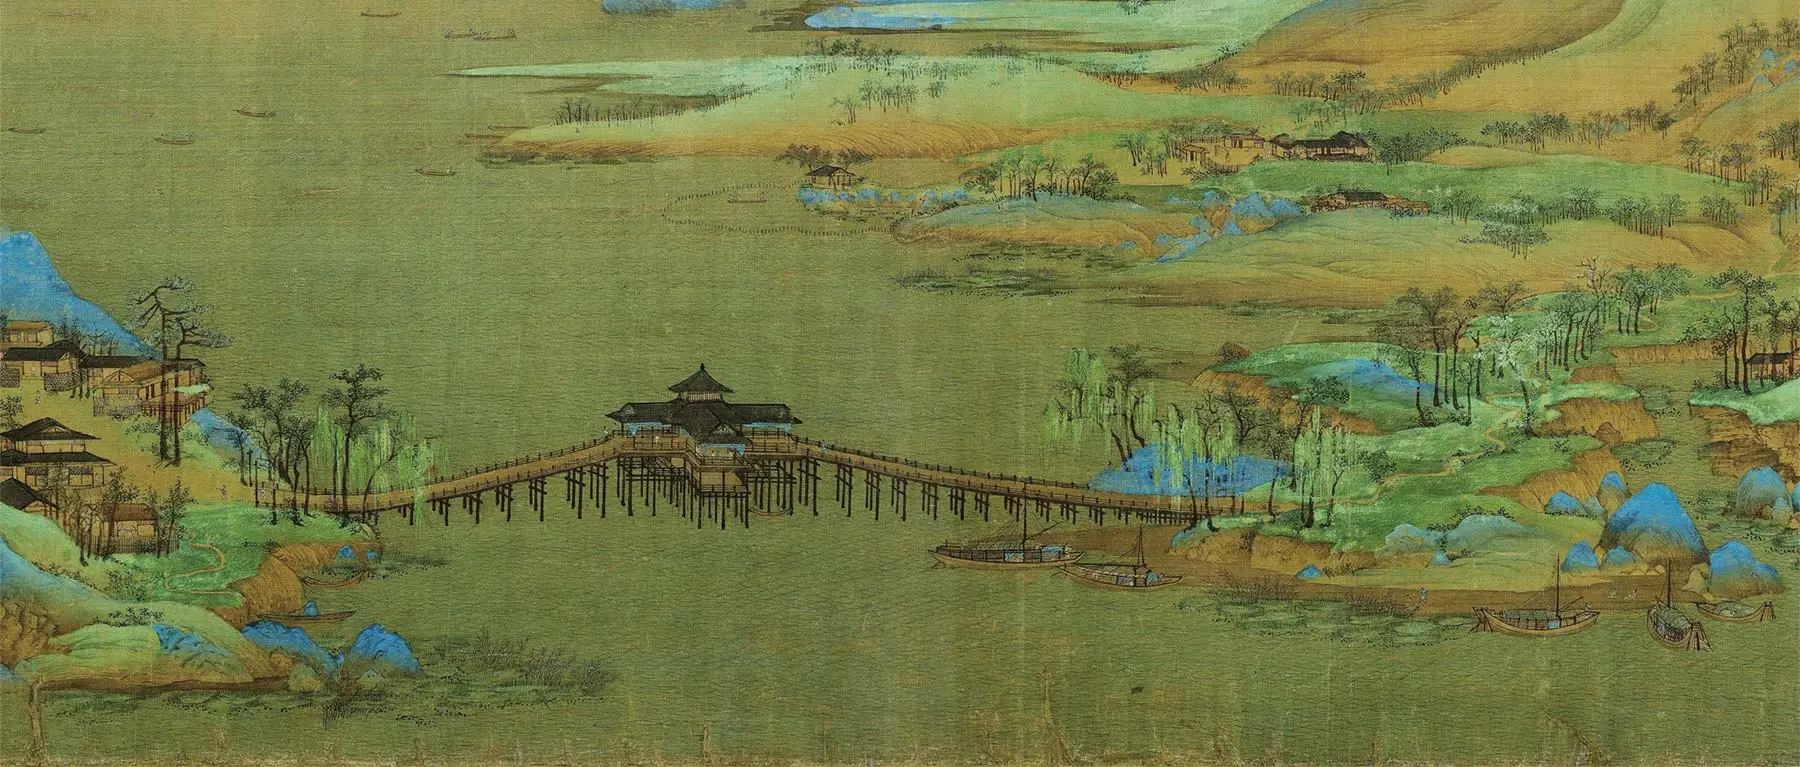 青绿山水画《千里江山图》中的夸江大桥